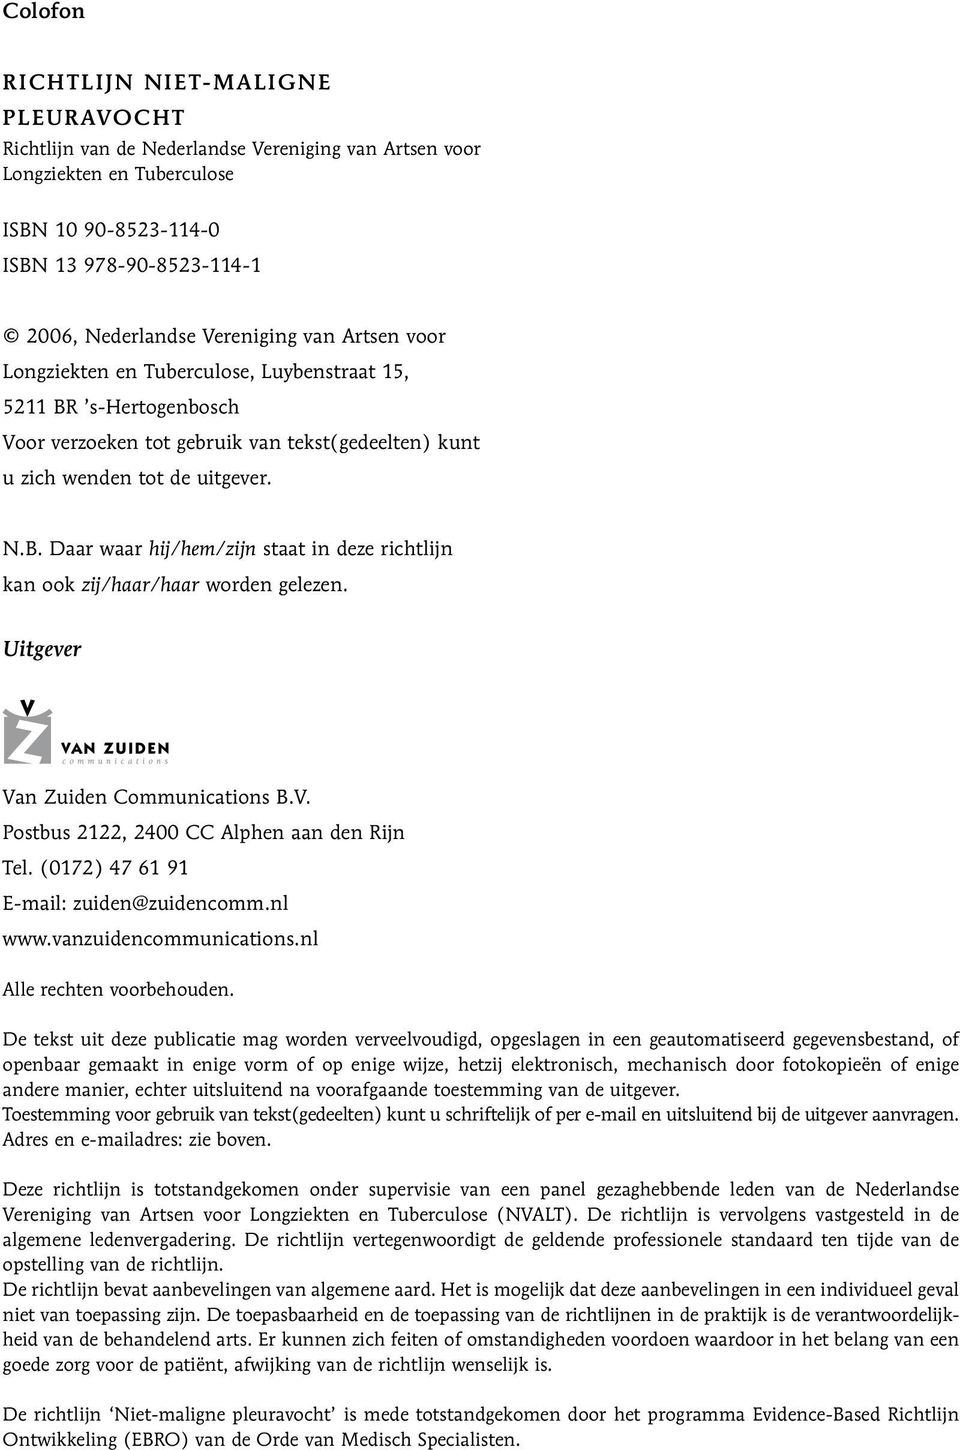 Uitgever Van Zuiden Communications B.V. Postbus 2122, 2400 CC Alphen aan den Rijn Tel. (0172) 47 61 91 E-mail: zuiden@zuidencomm.nl www.vanzuidencommunications.nl Alle rechten voorbehouden.